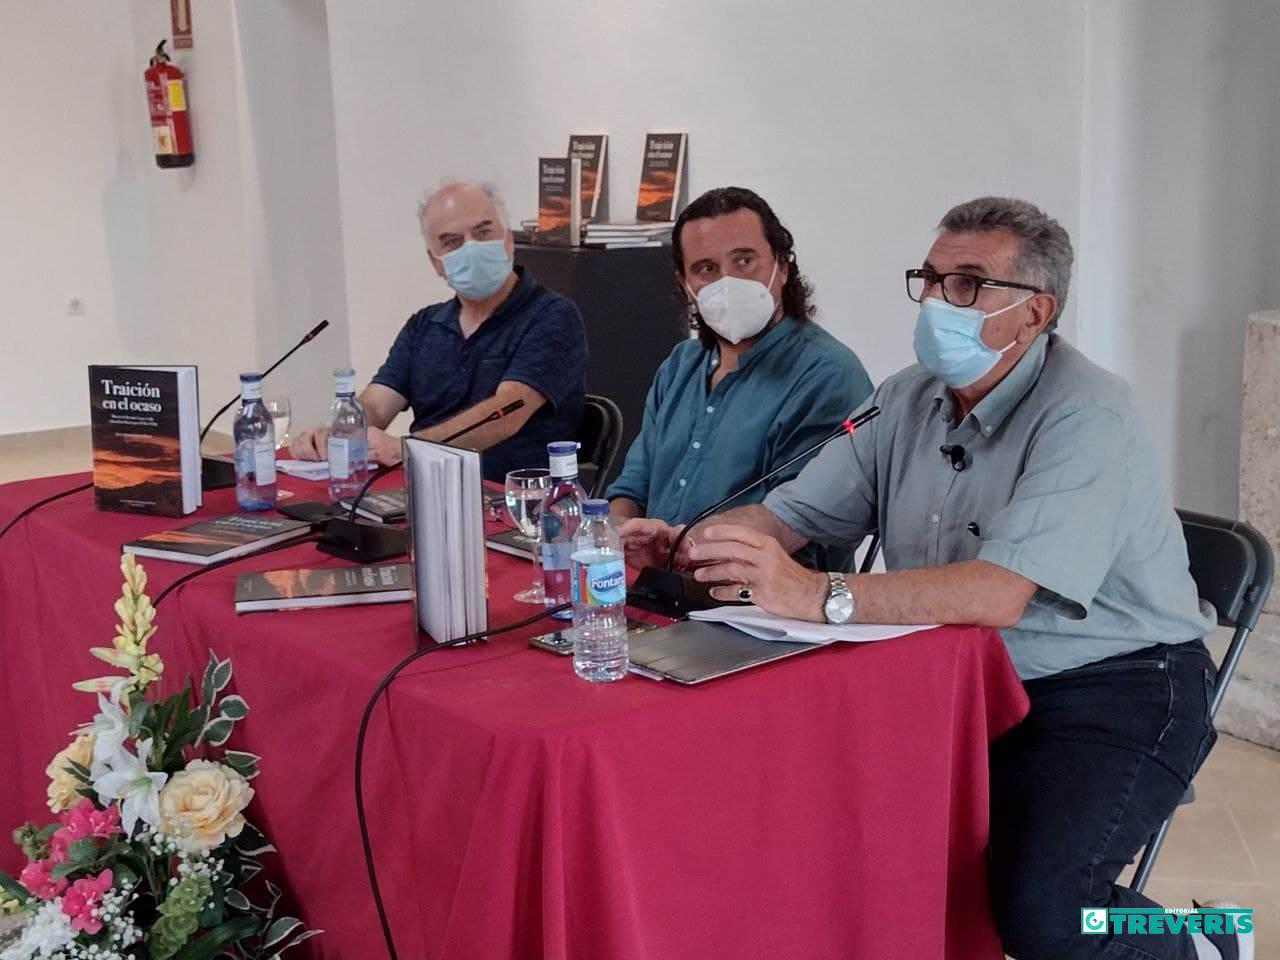 El autor, Luis Antonio García Bravo, durante su intervención, junto al alcalde de Medina Sidonia, Fernando Macías, y el editor, Fernando Sígler.